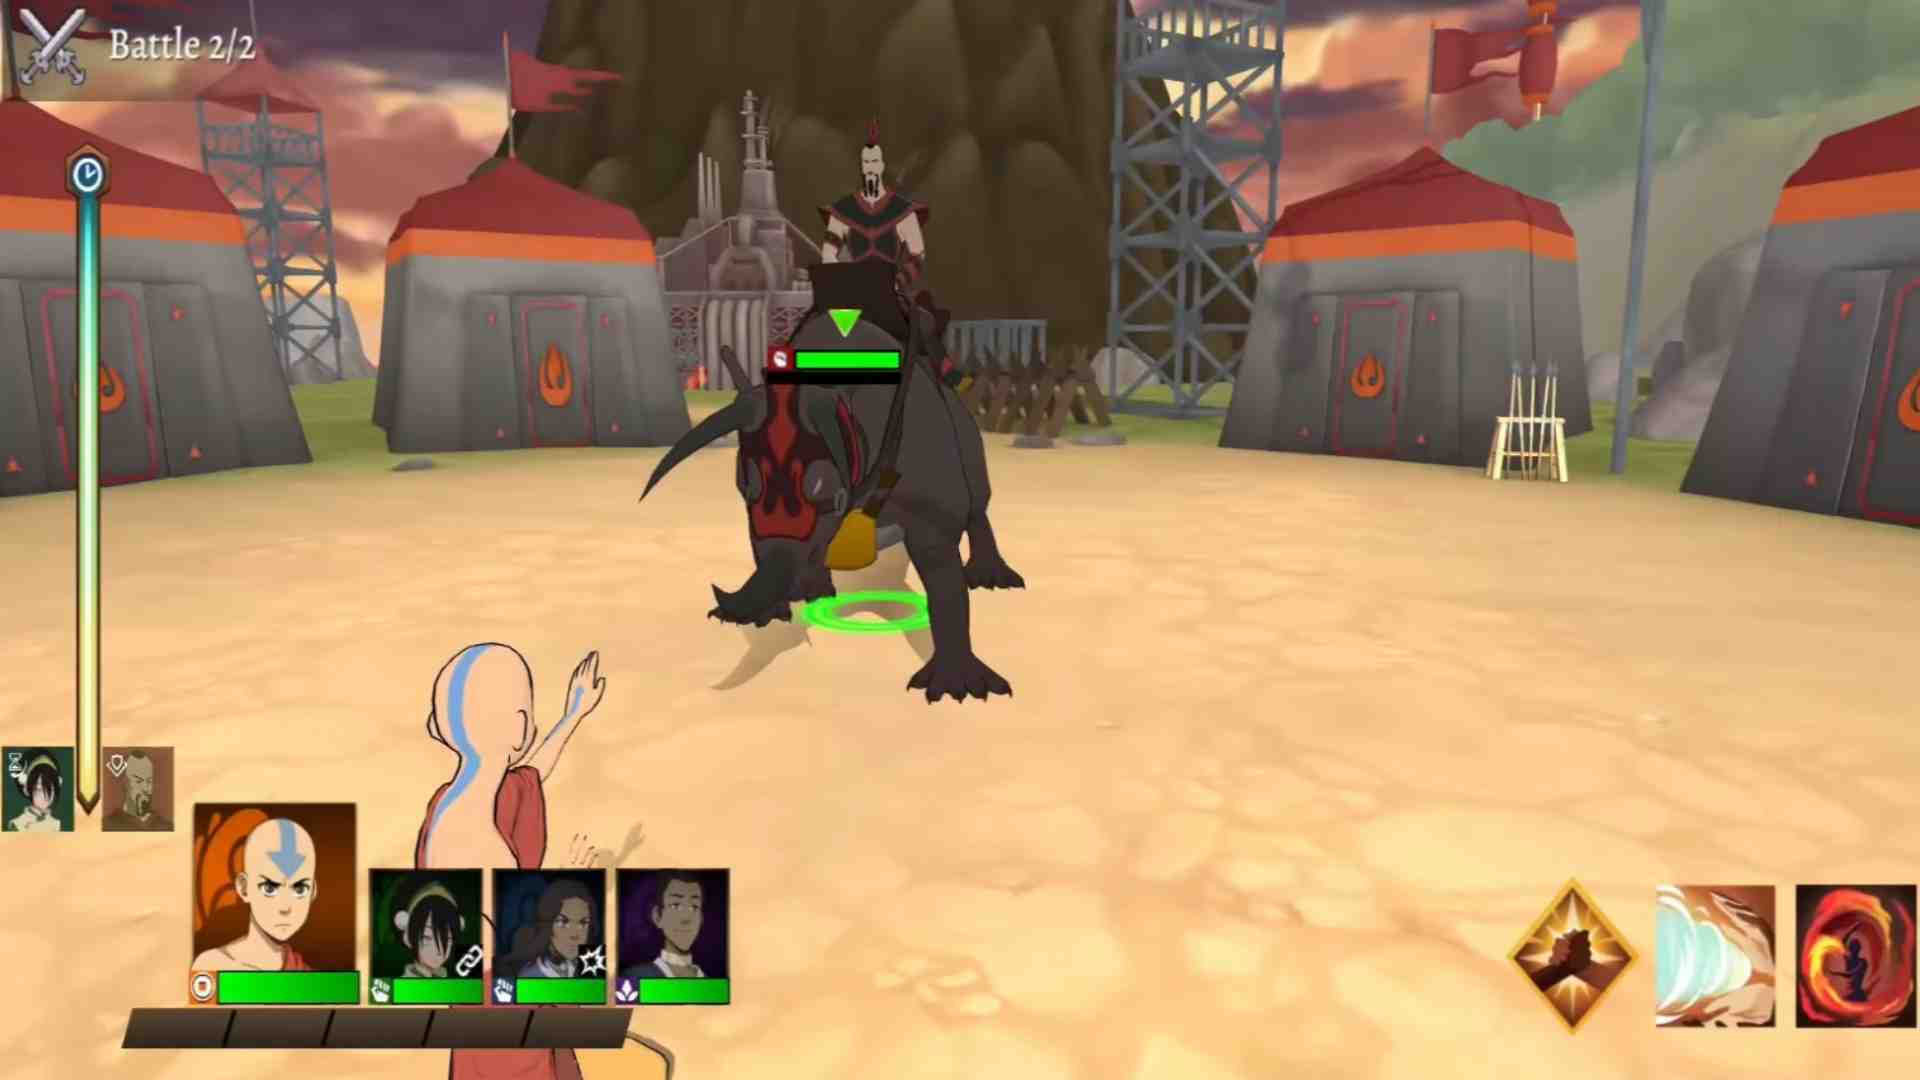 Tải và chơi trò giải trí Avatar 2 bên trên PC Android iPhone Java